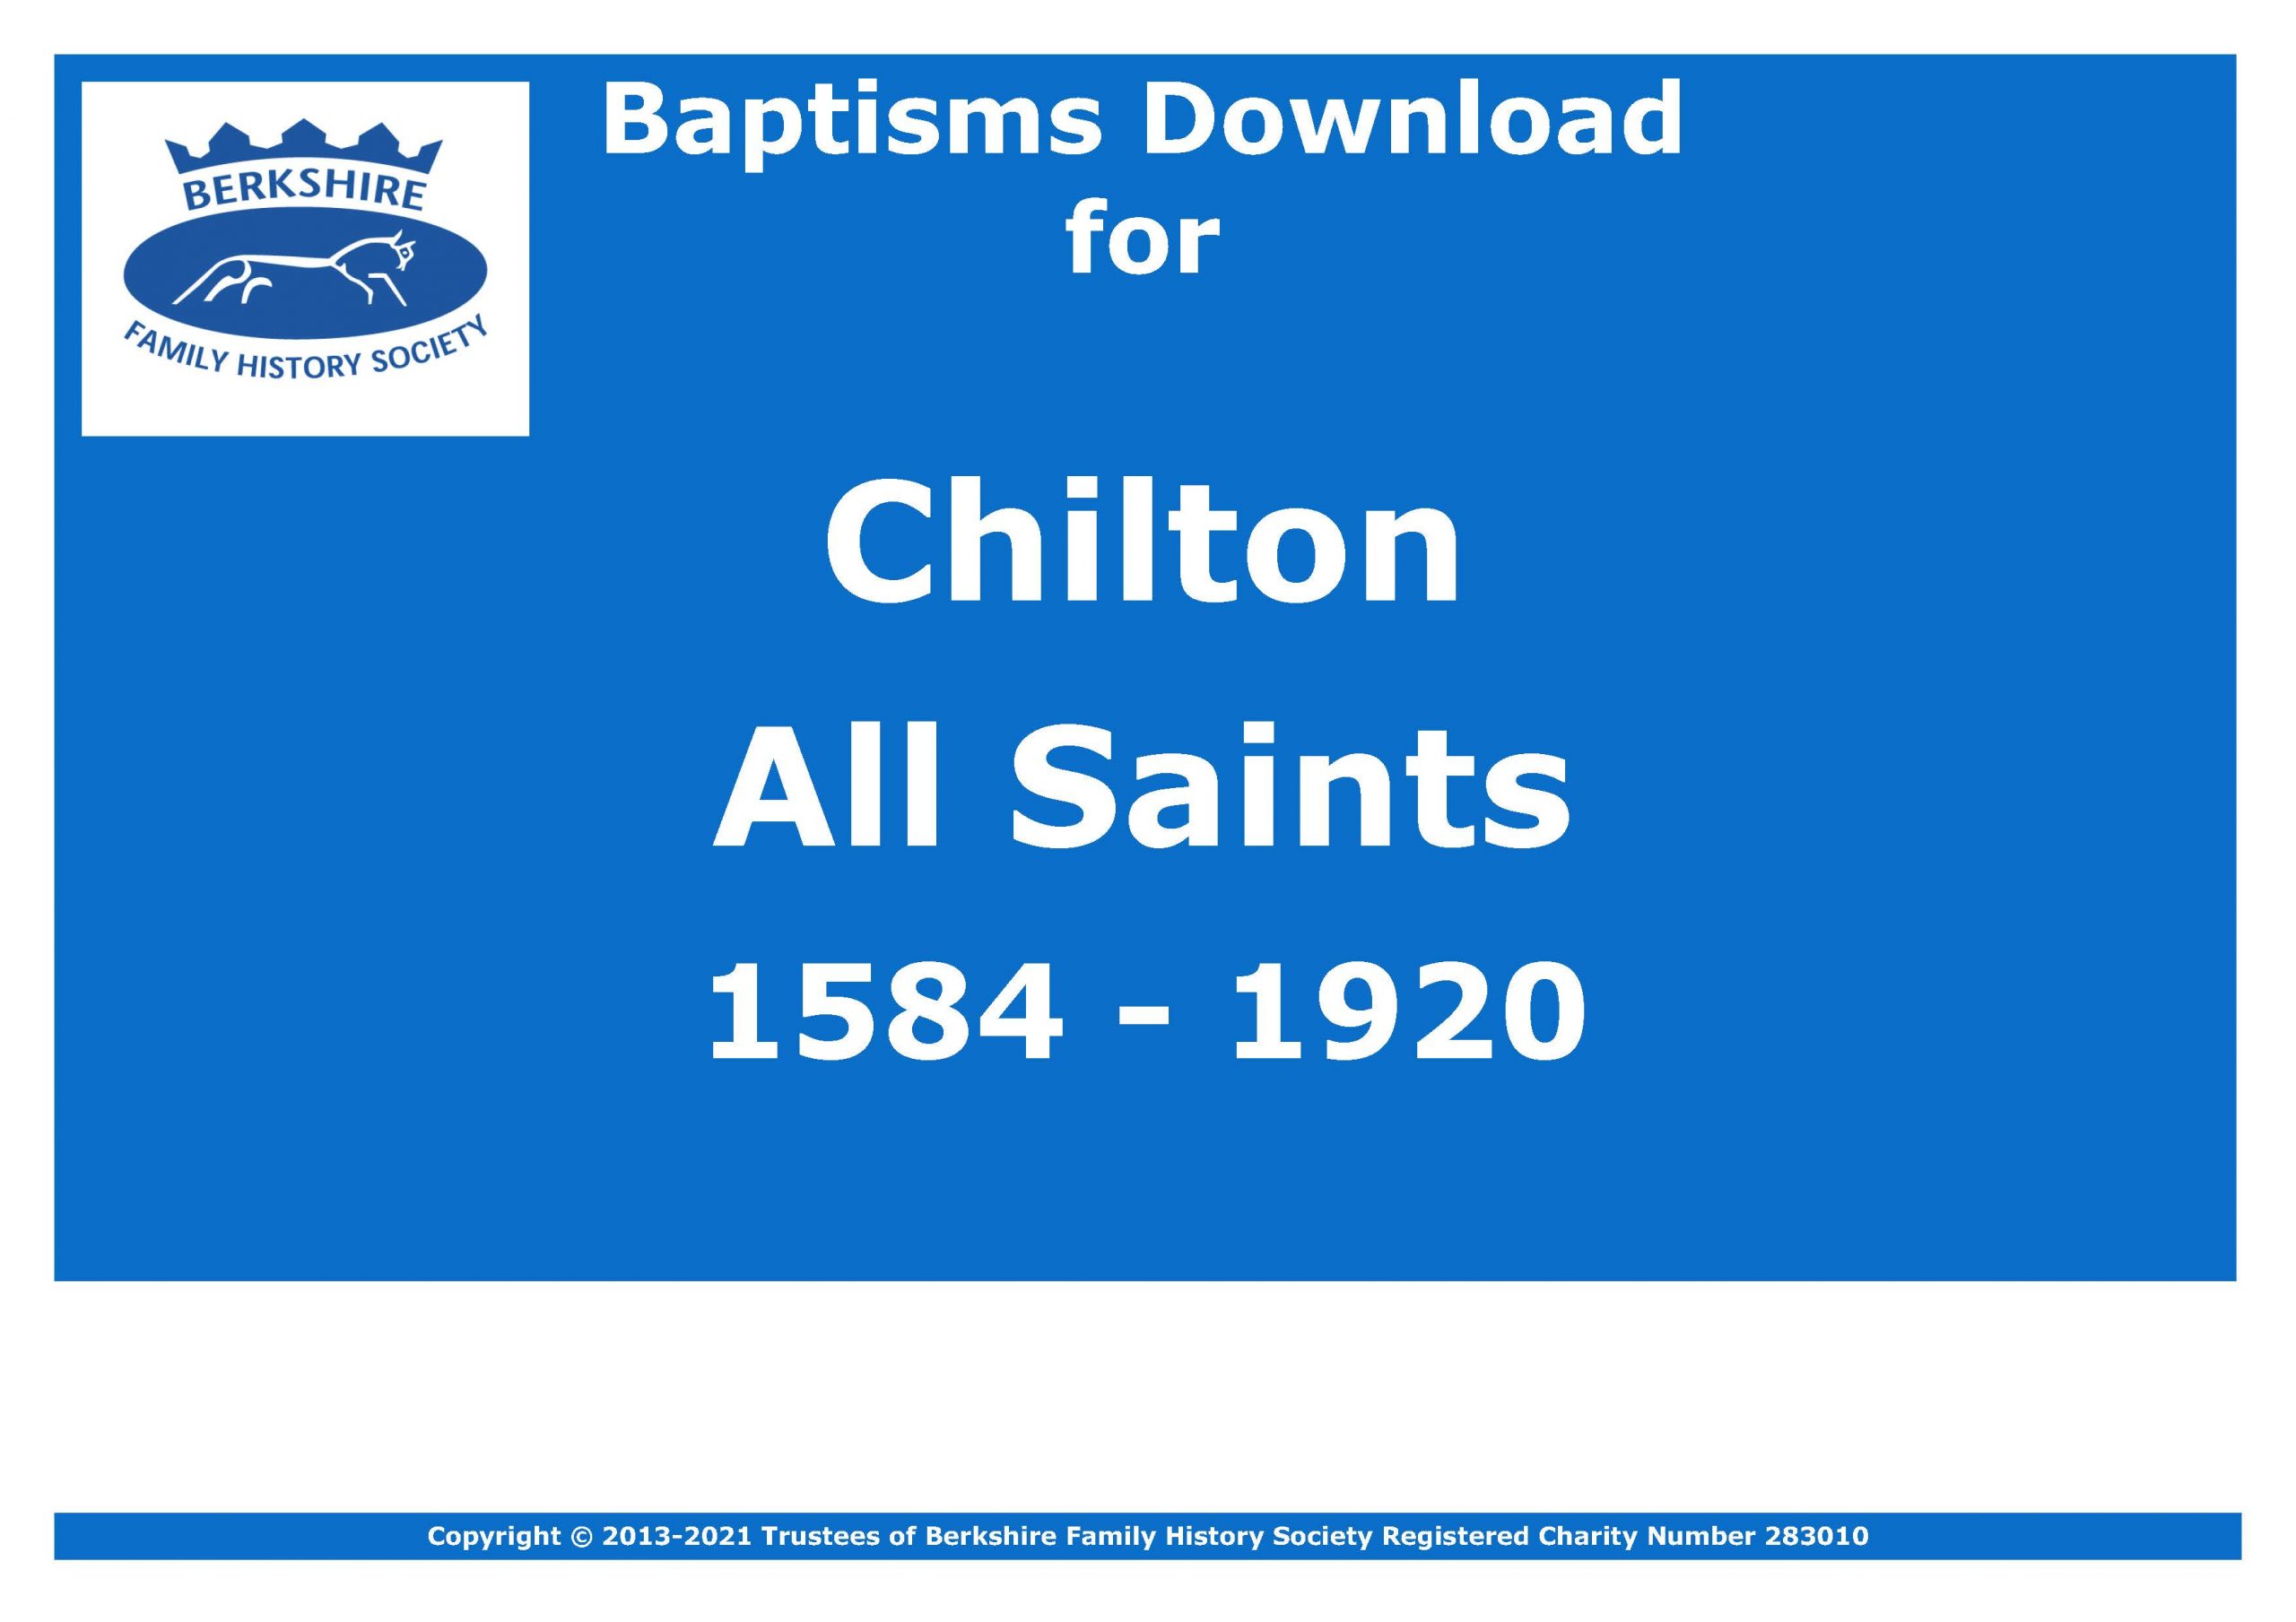 Chilton All Saints Baptisms 1584-1920 (Download) D1615